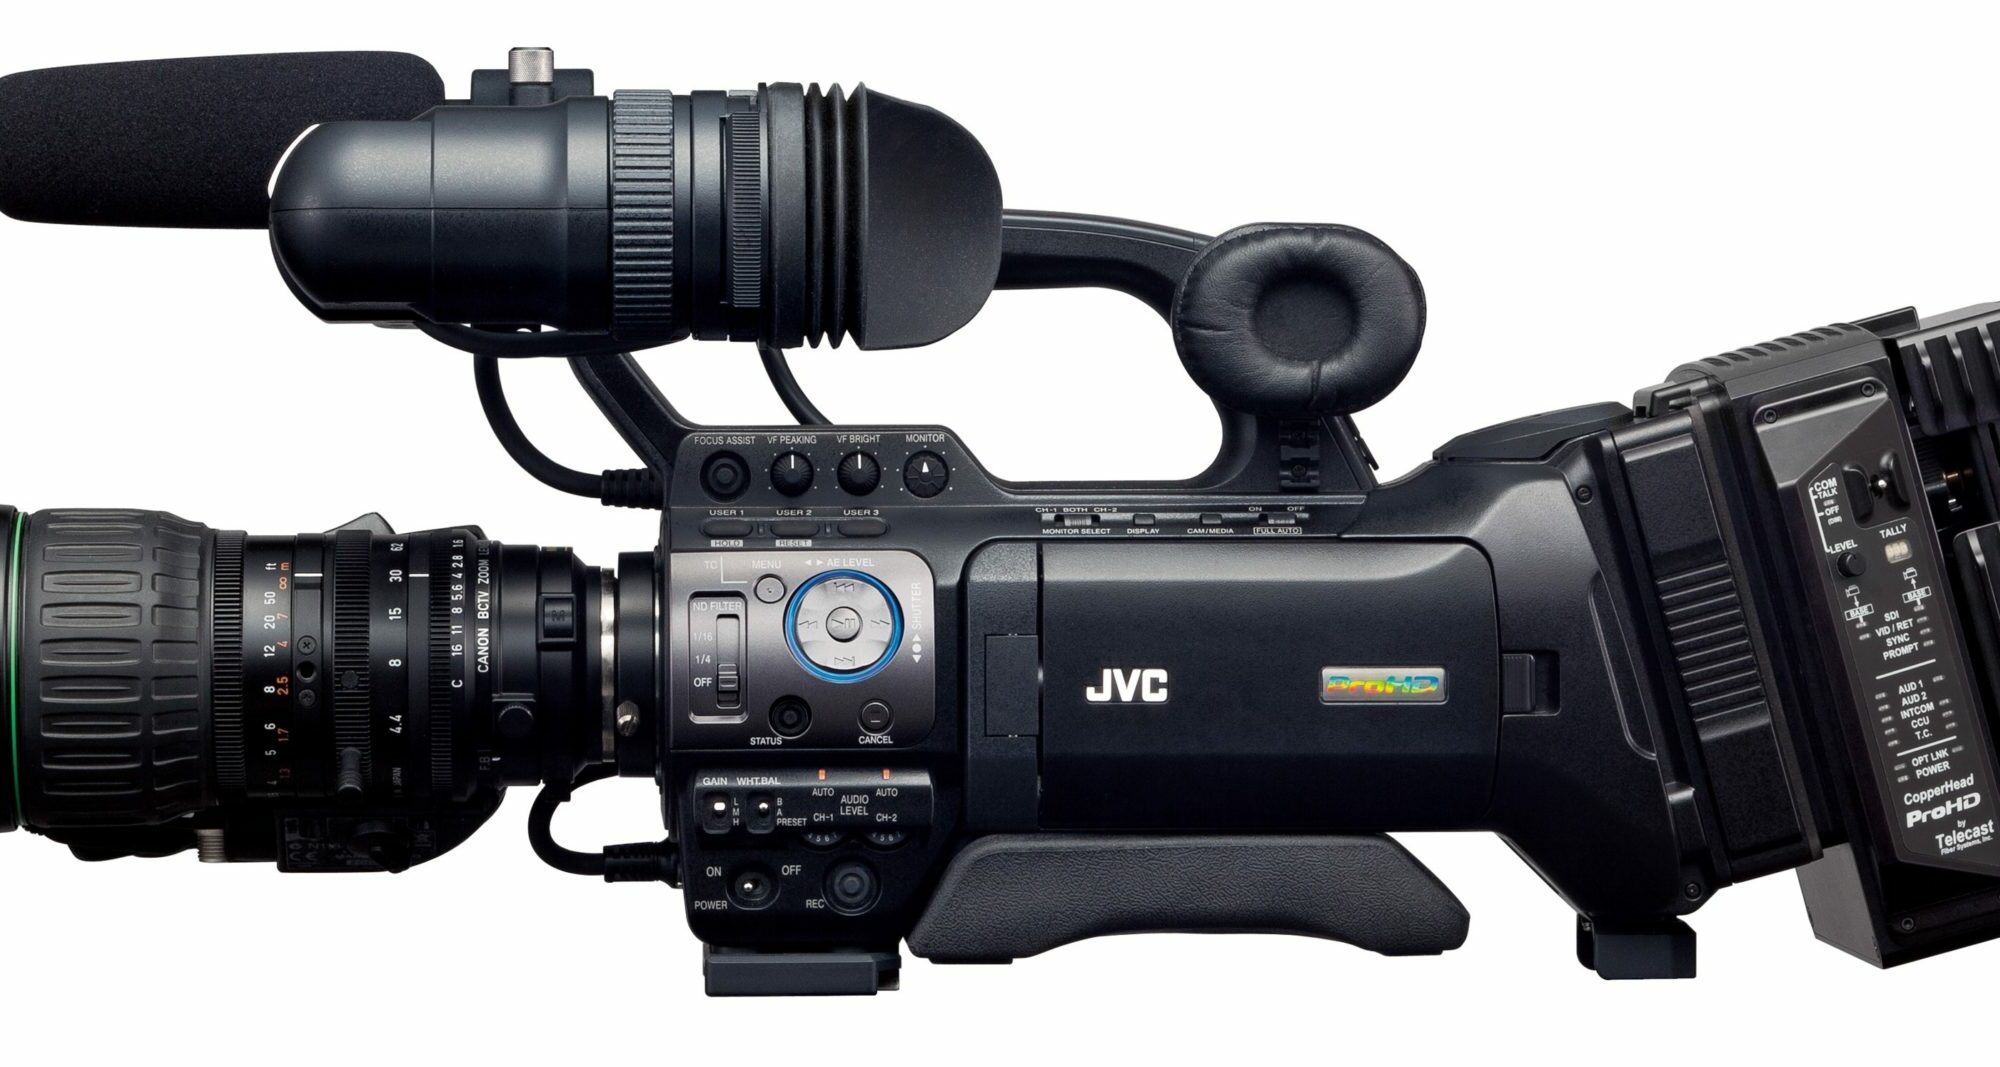 Pack Uni Tour GY-HM790E JVC Pro Caméra HD Tri capteurs – Location